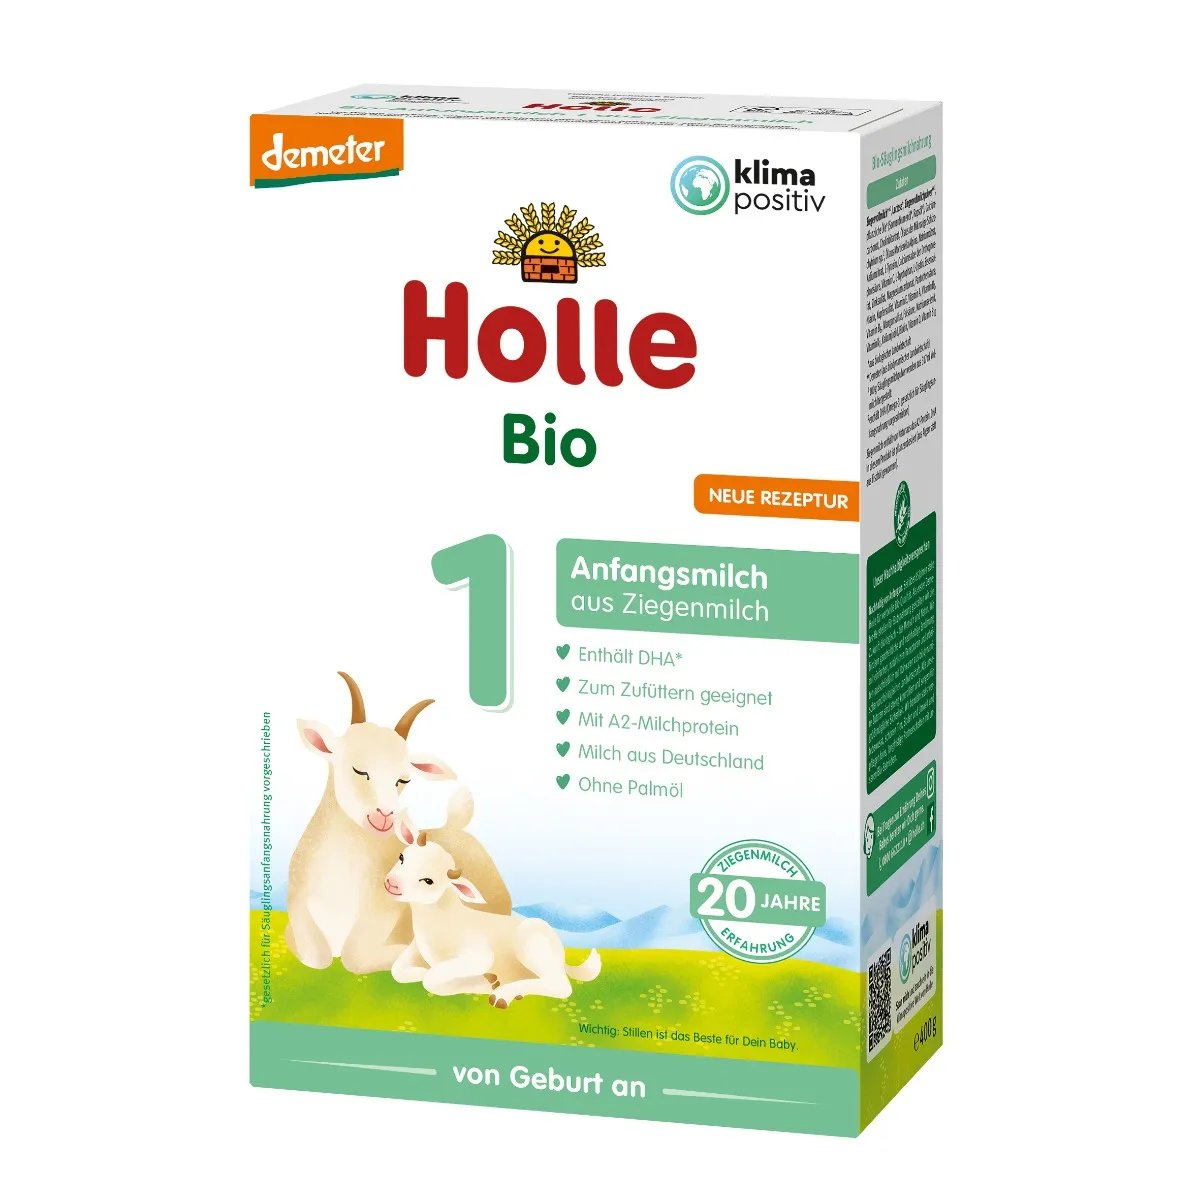 Holle Bio 1, mleko początkowe na bazie mleka koziego, 400 g 